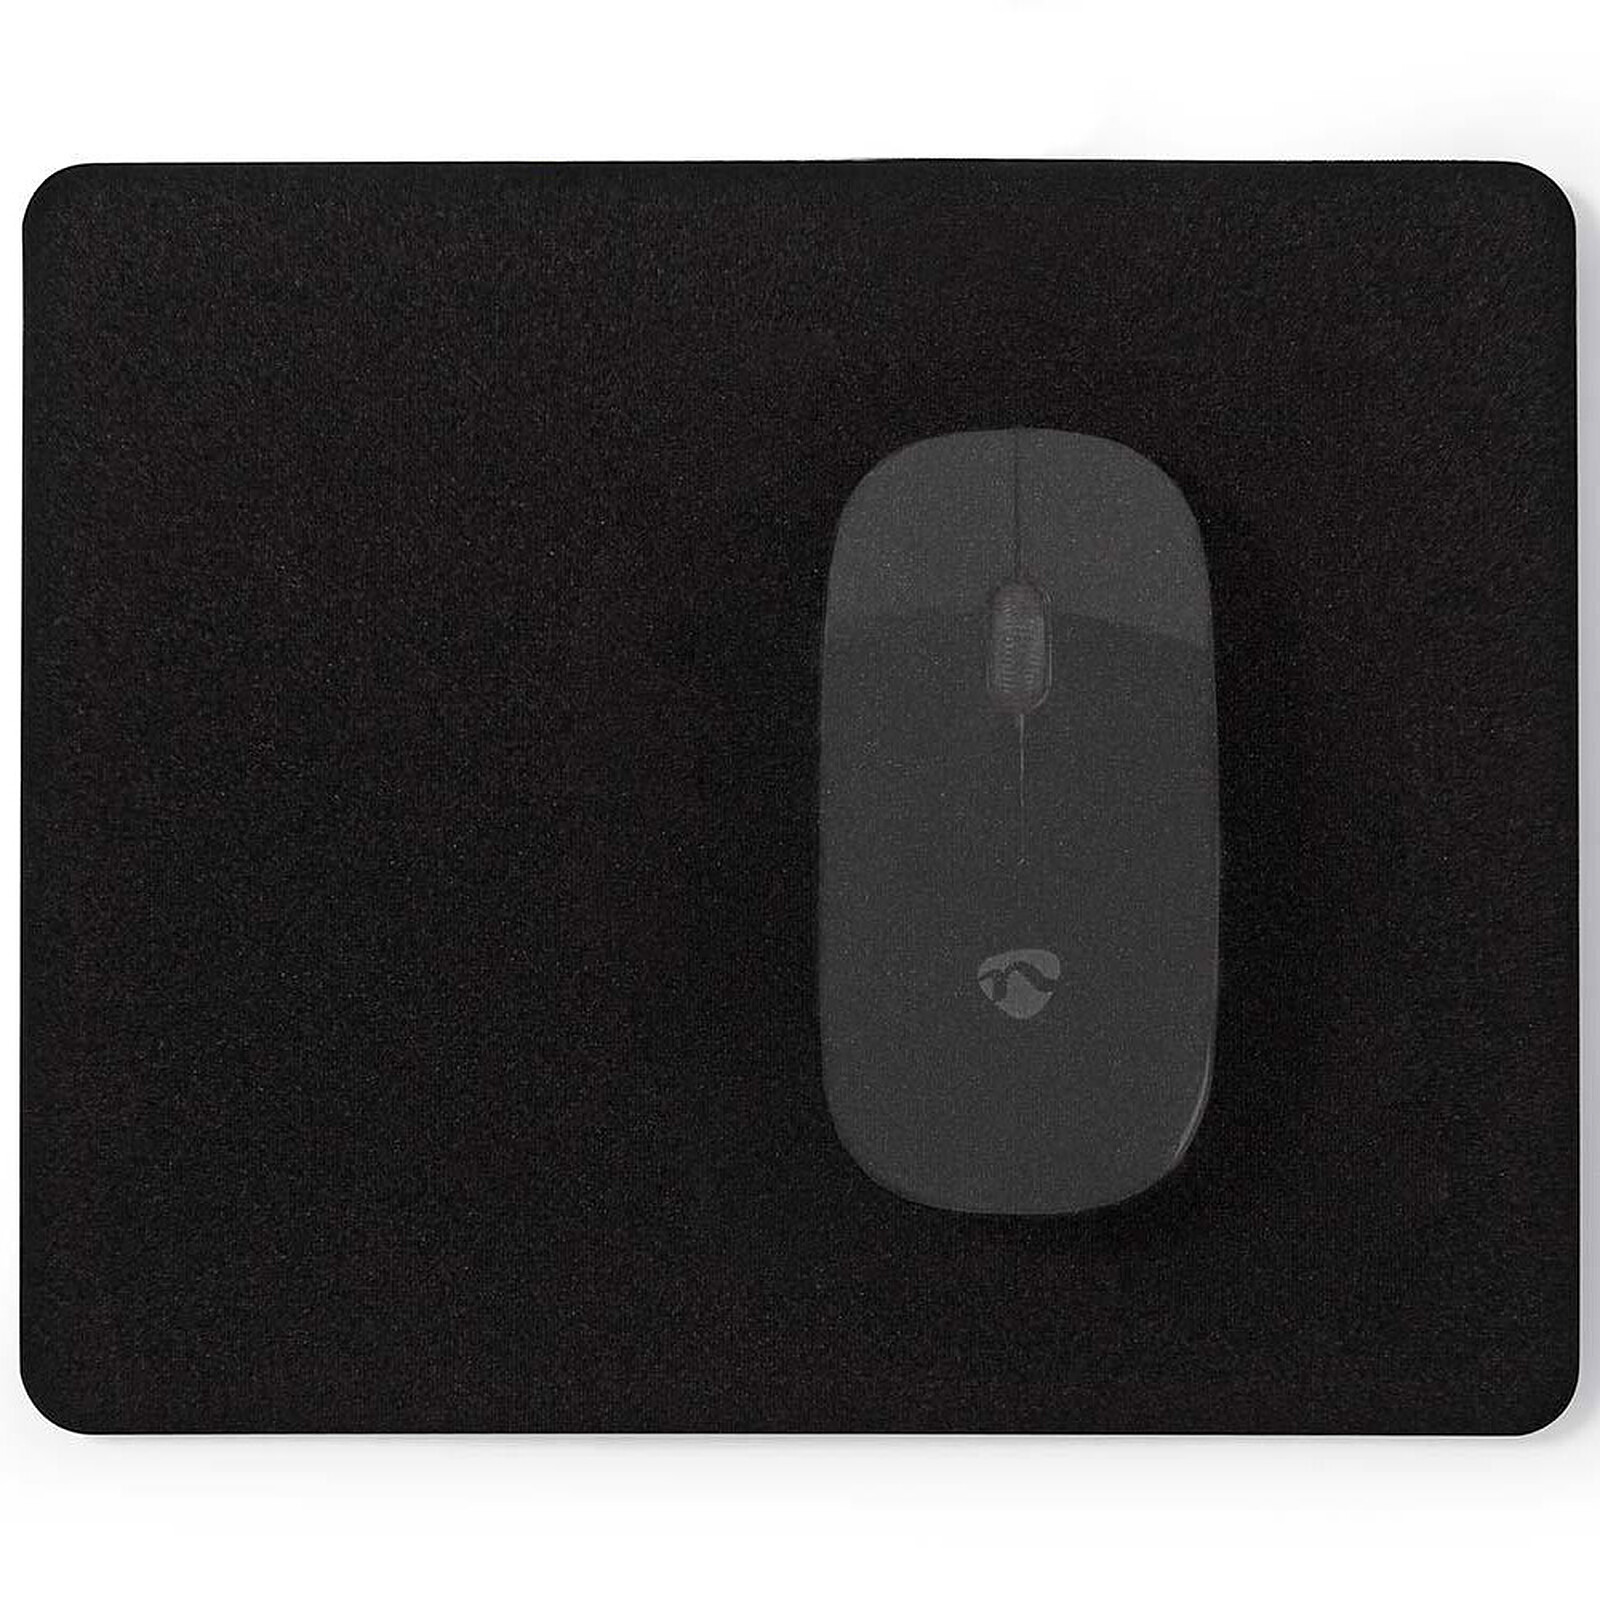 Logitech G G840 XL Gaming Mouse Pad (Noir) - Tapis de souris - Garantie 3  ans LDLC